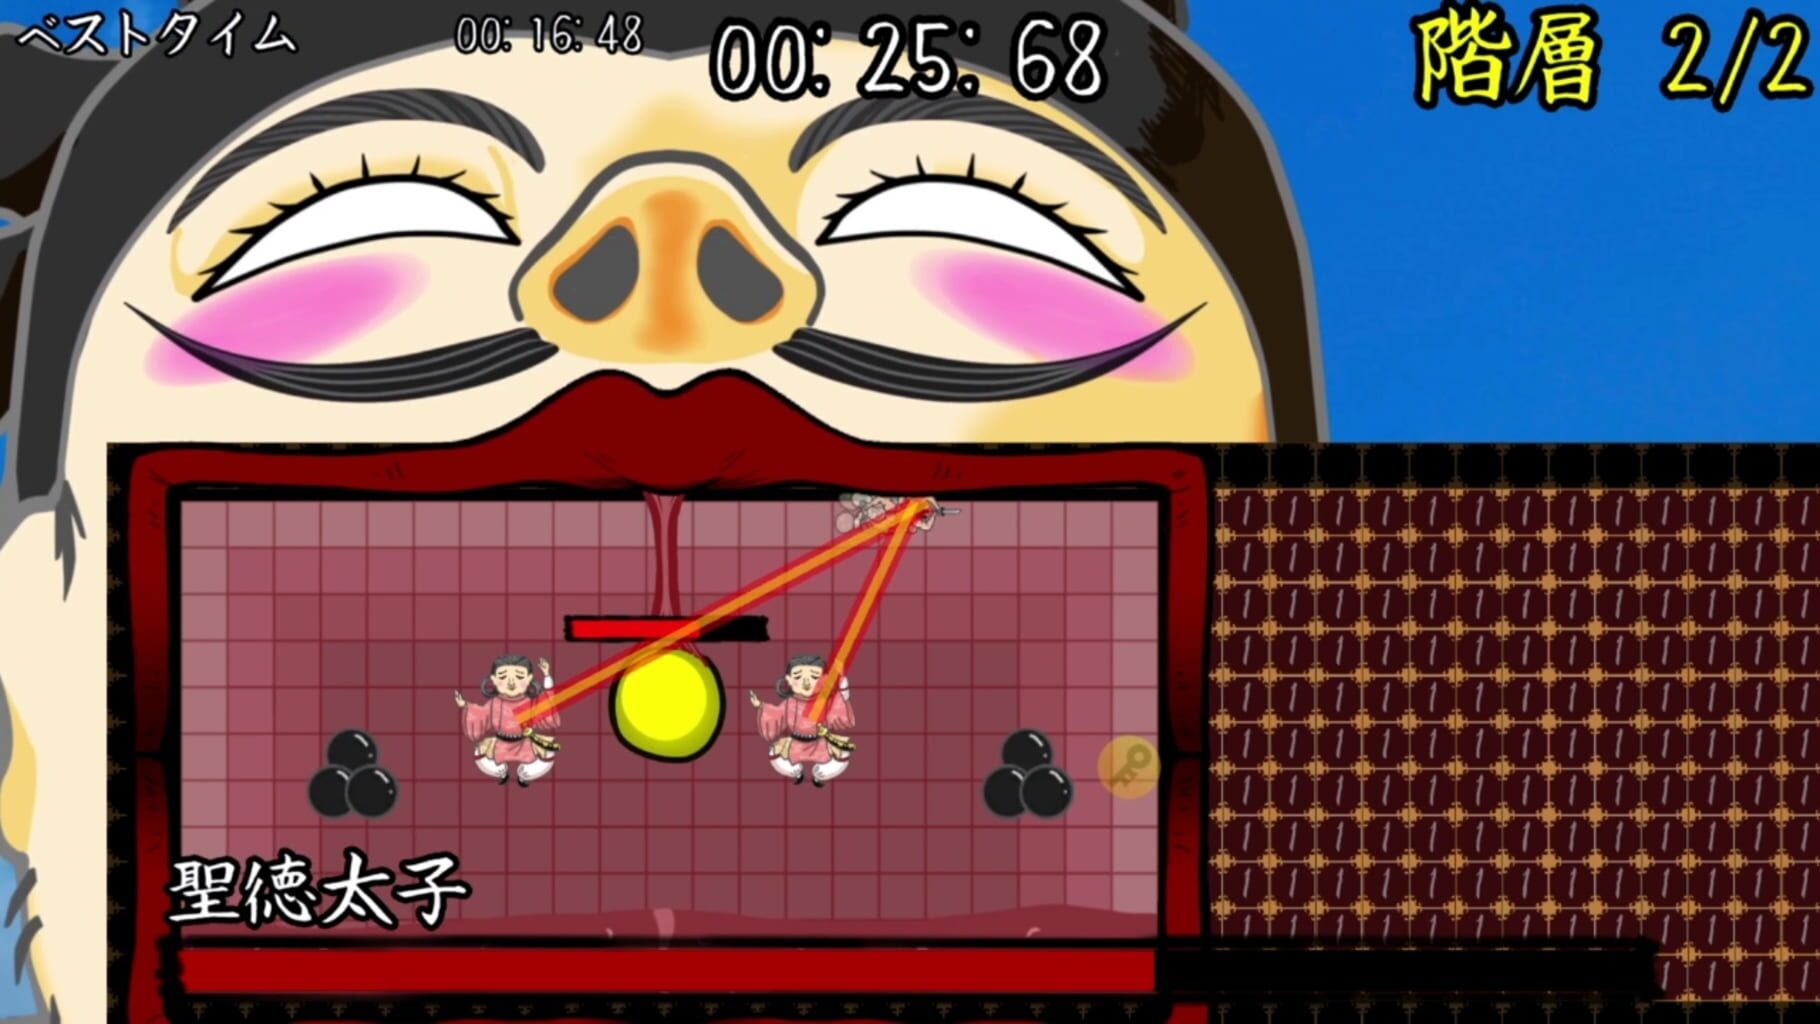 LotionSamurai for Nintendo Switch screenshot